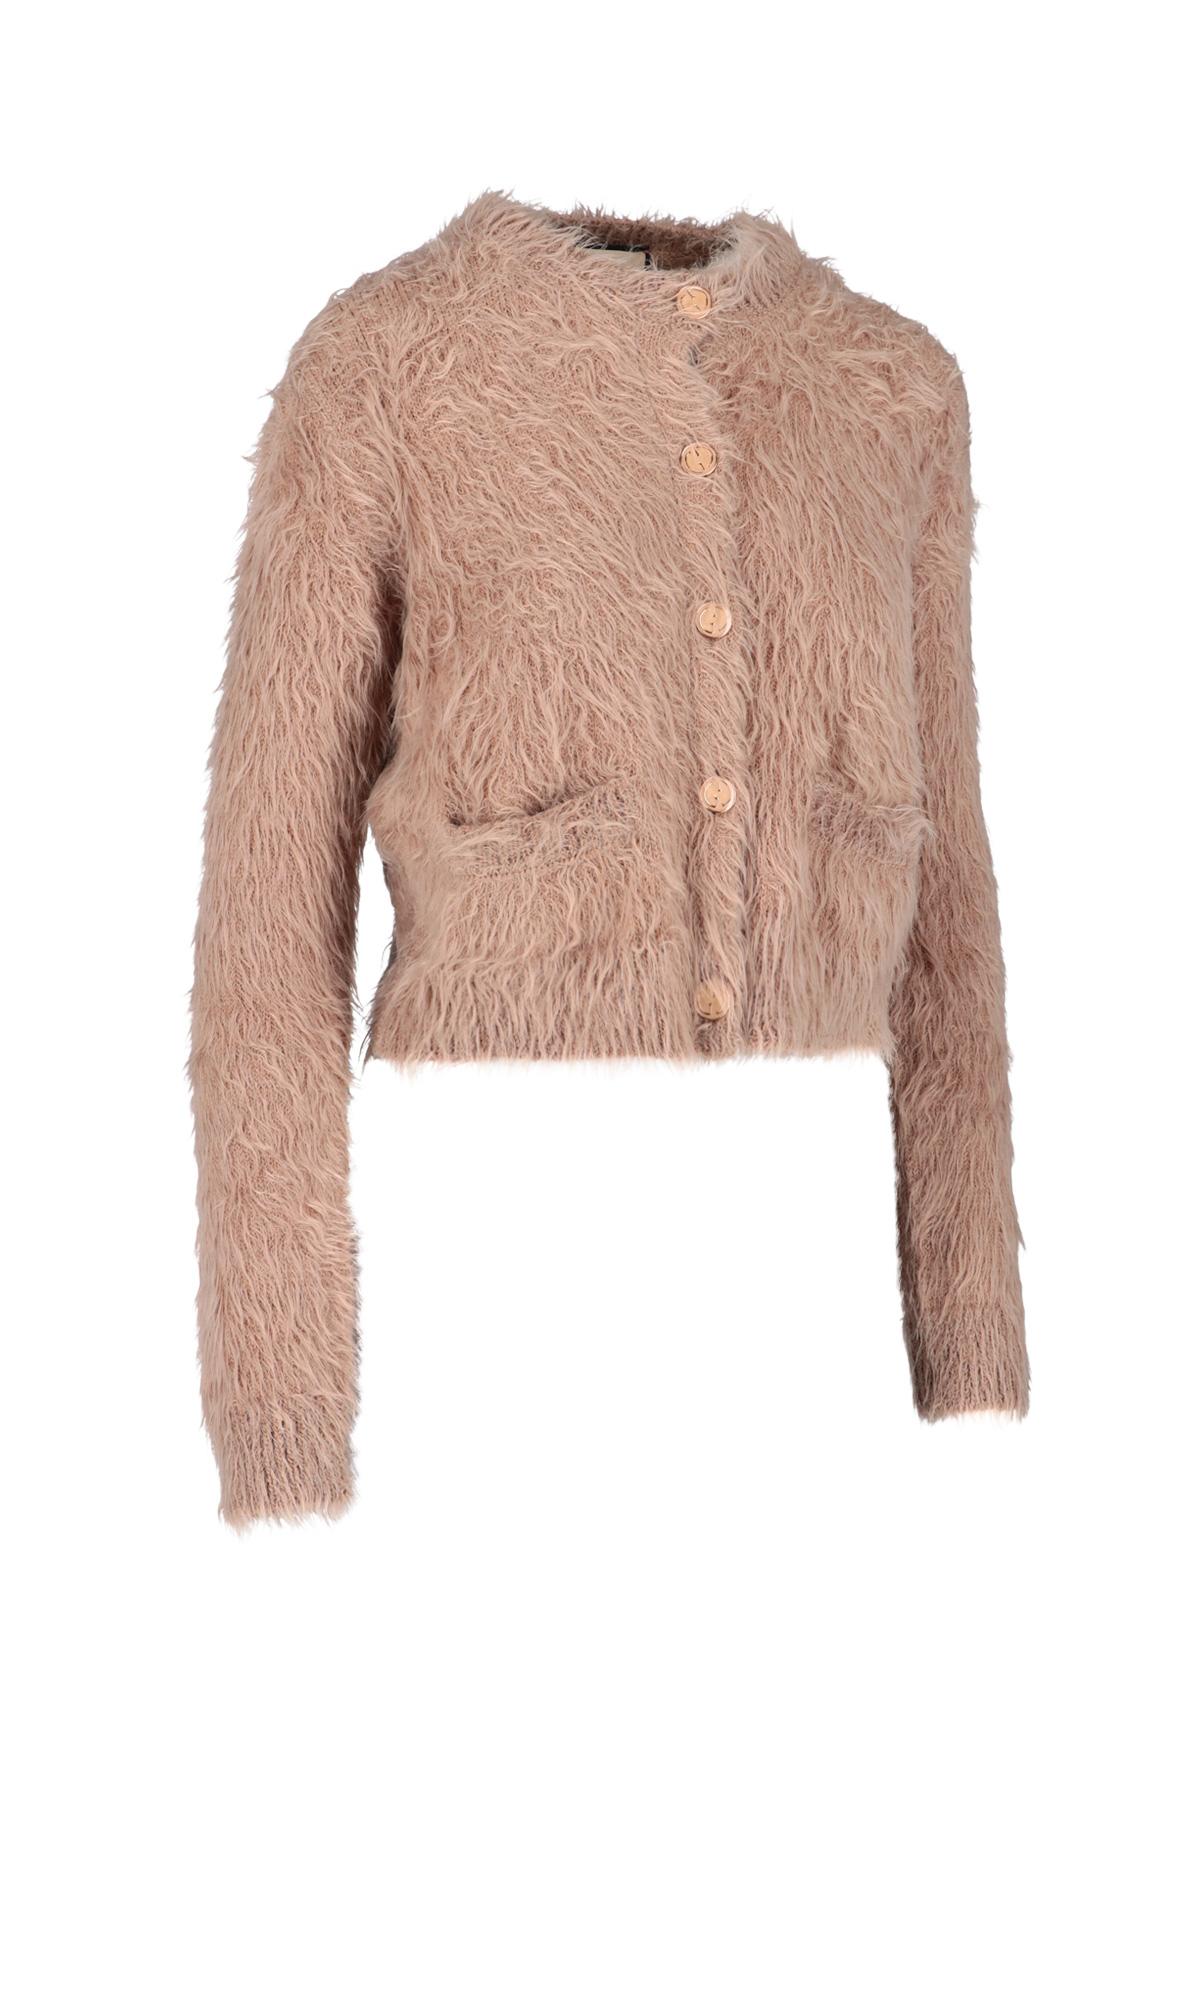 Reversible GG Mohair Wool Cardigan In Beige & Brown